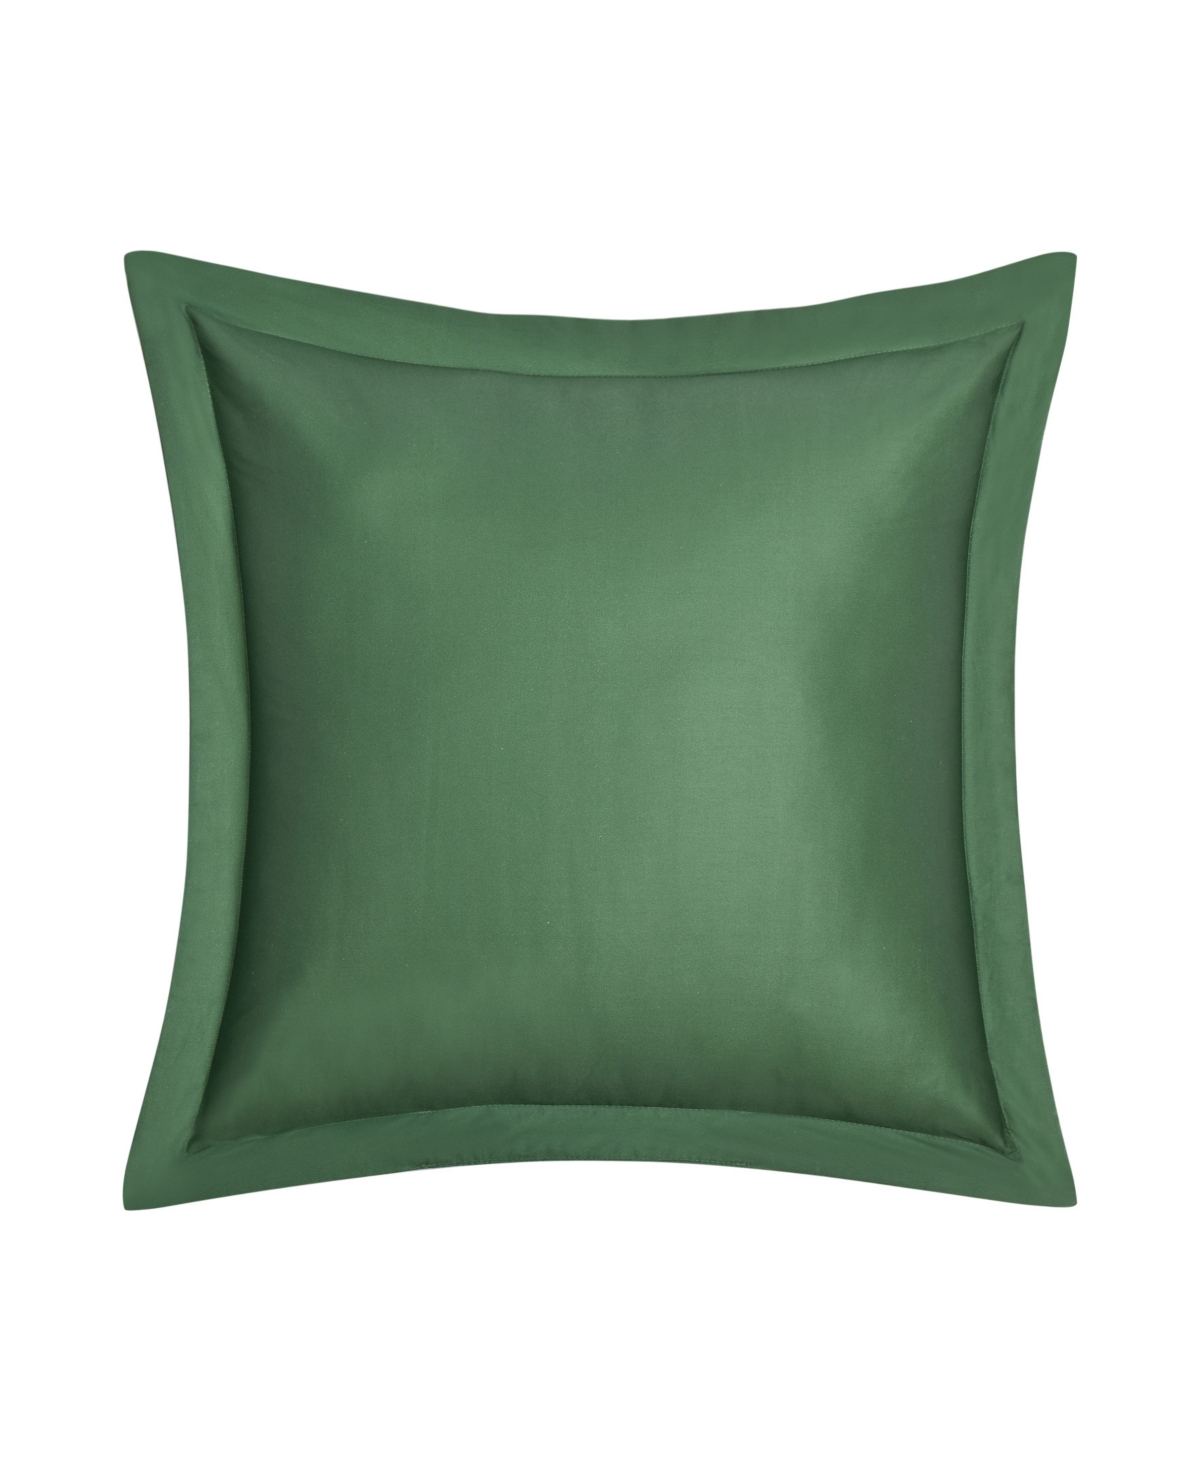 Piper & Wright Clara Square Decorative Pillow, 20" X 20" In Green